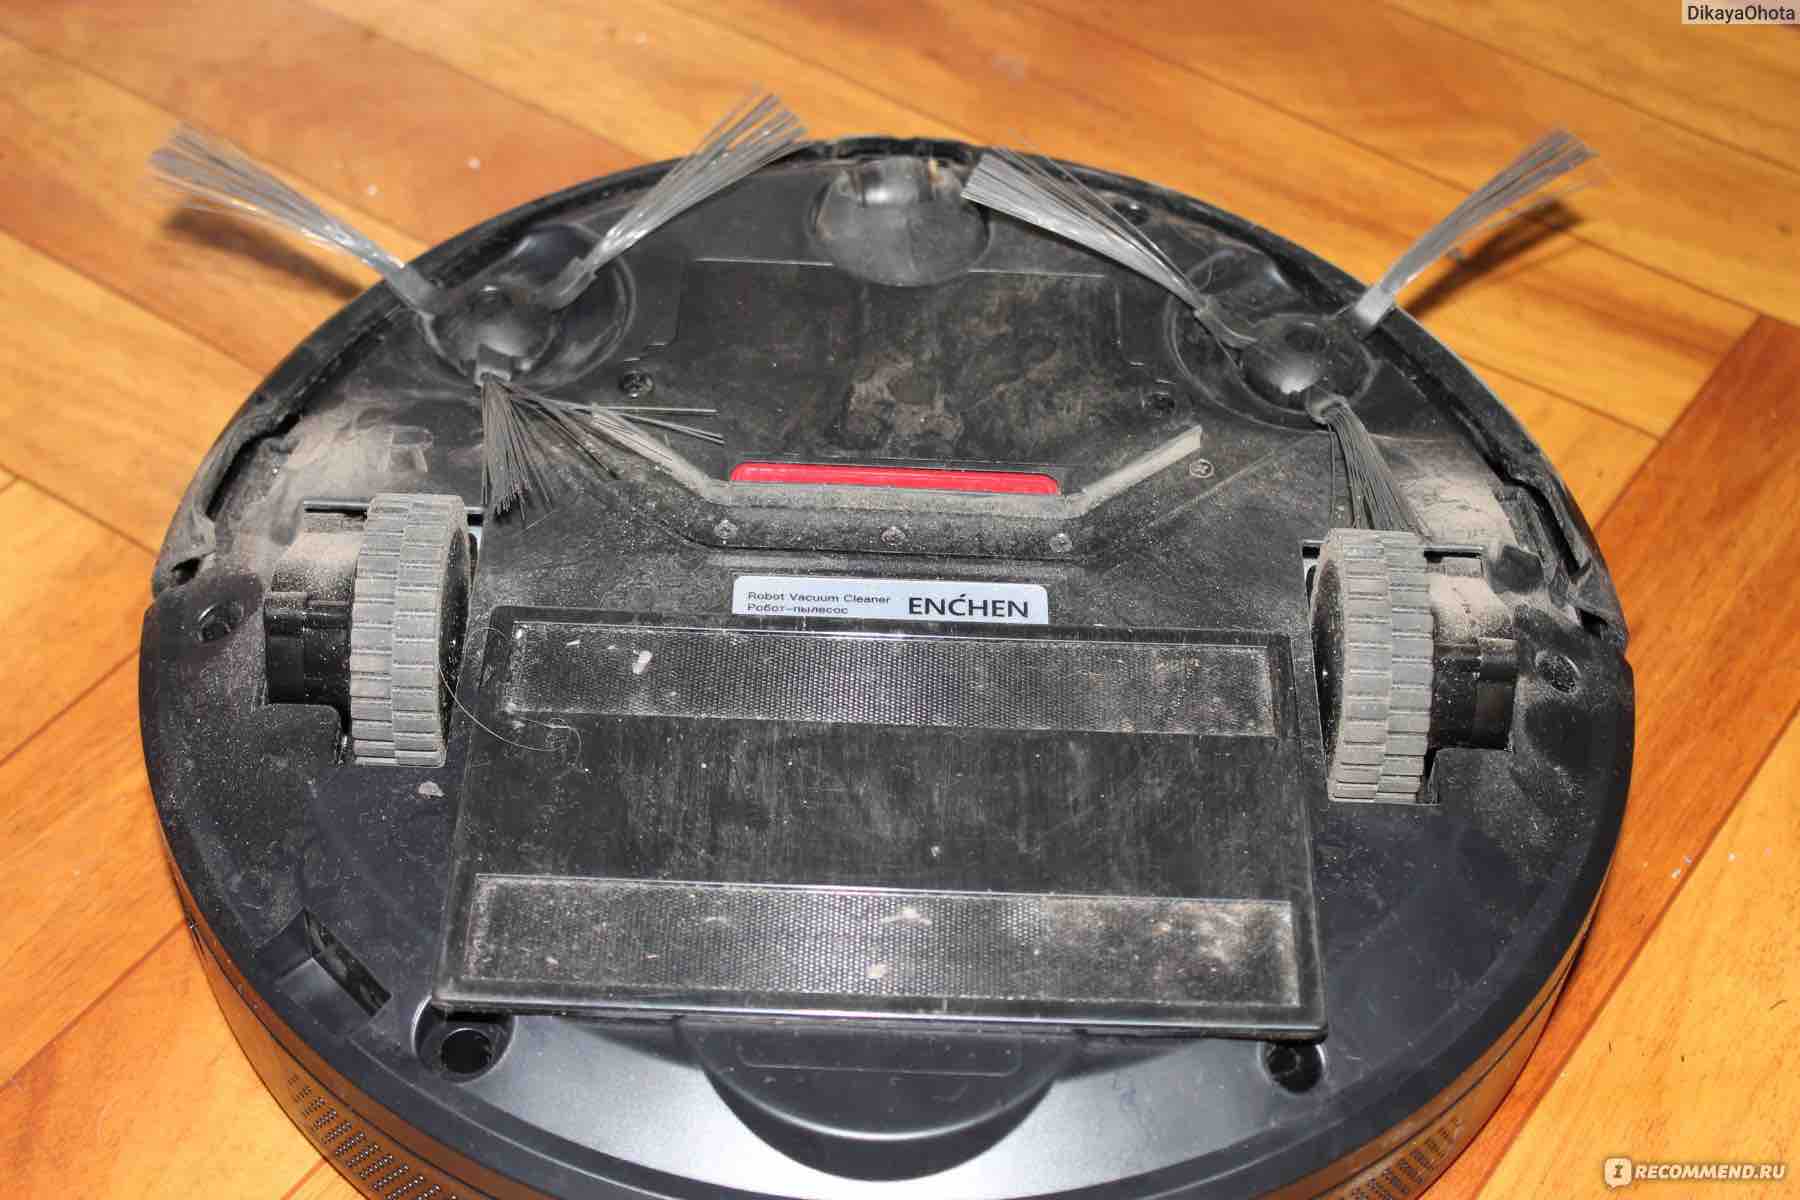 Пылесос enchen vacuum cleaner r1. Робот пылесос enchen r1. Робот-пылесос enchen Vacuum Cleaner r1 характеристики. Робот пылесос для дома enchen Vacuum Cleaner r1. Пылесос робот должен отвечать.